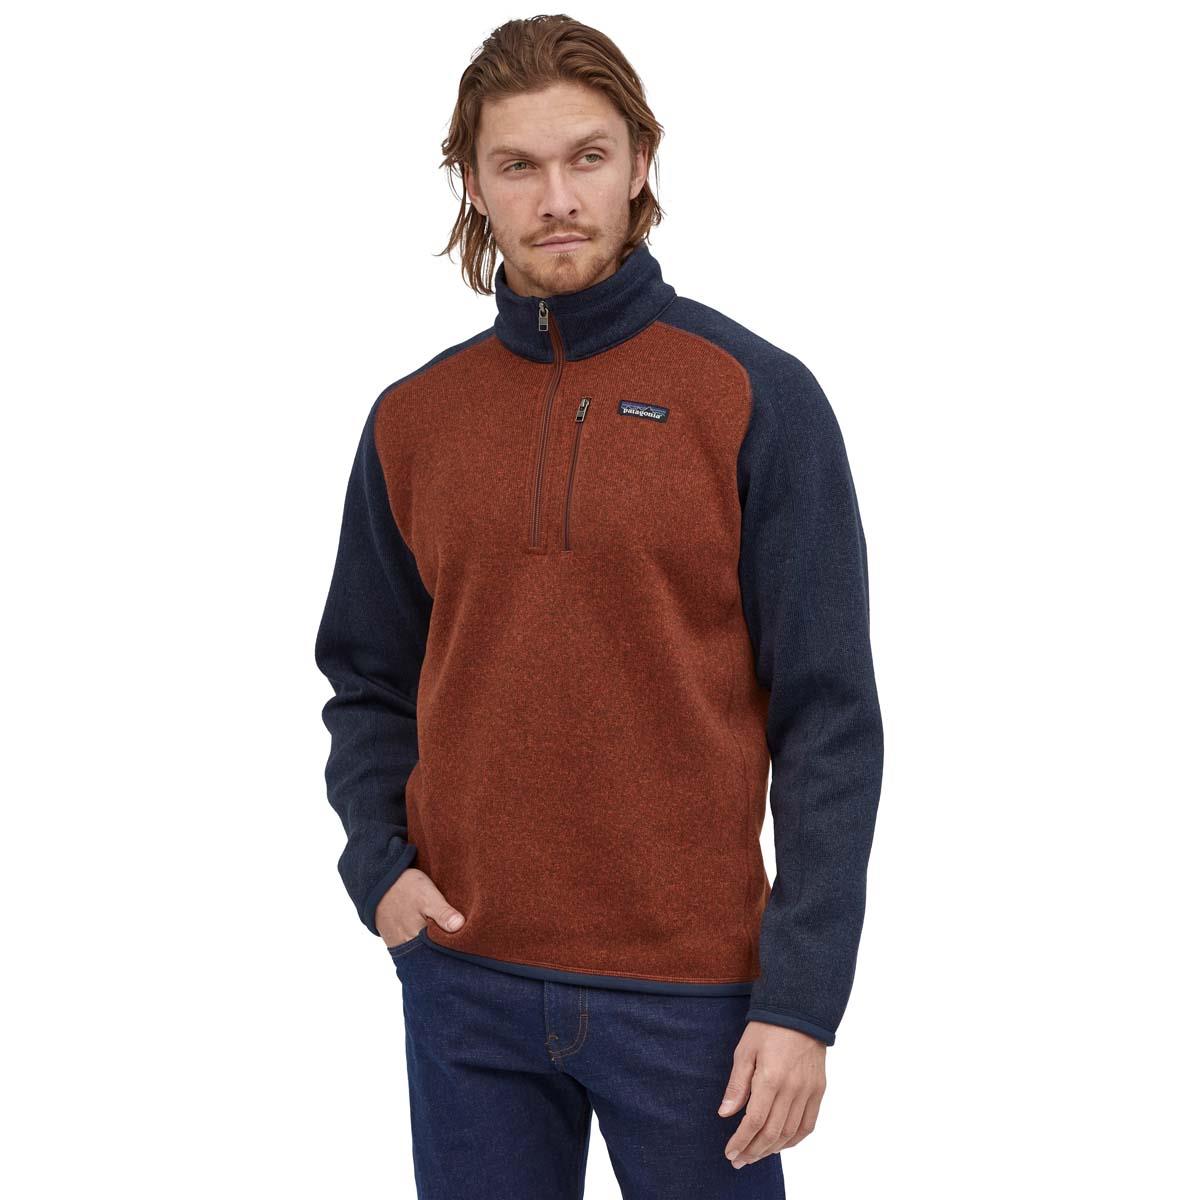 Stol hund Udflugt Patagonia Better Sweater 1/4 Zip - Men's | Buckmans.com